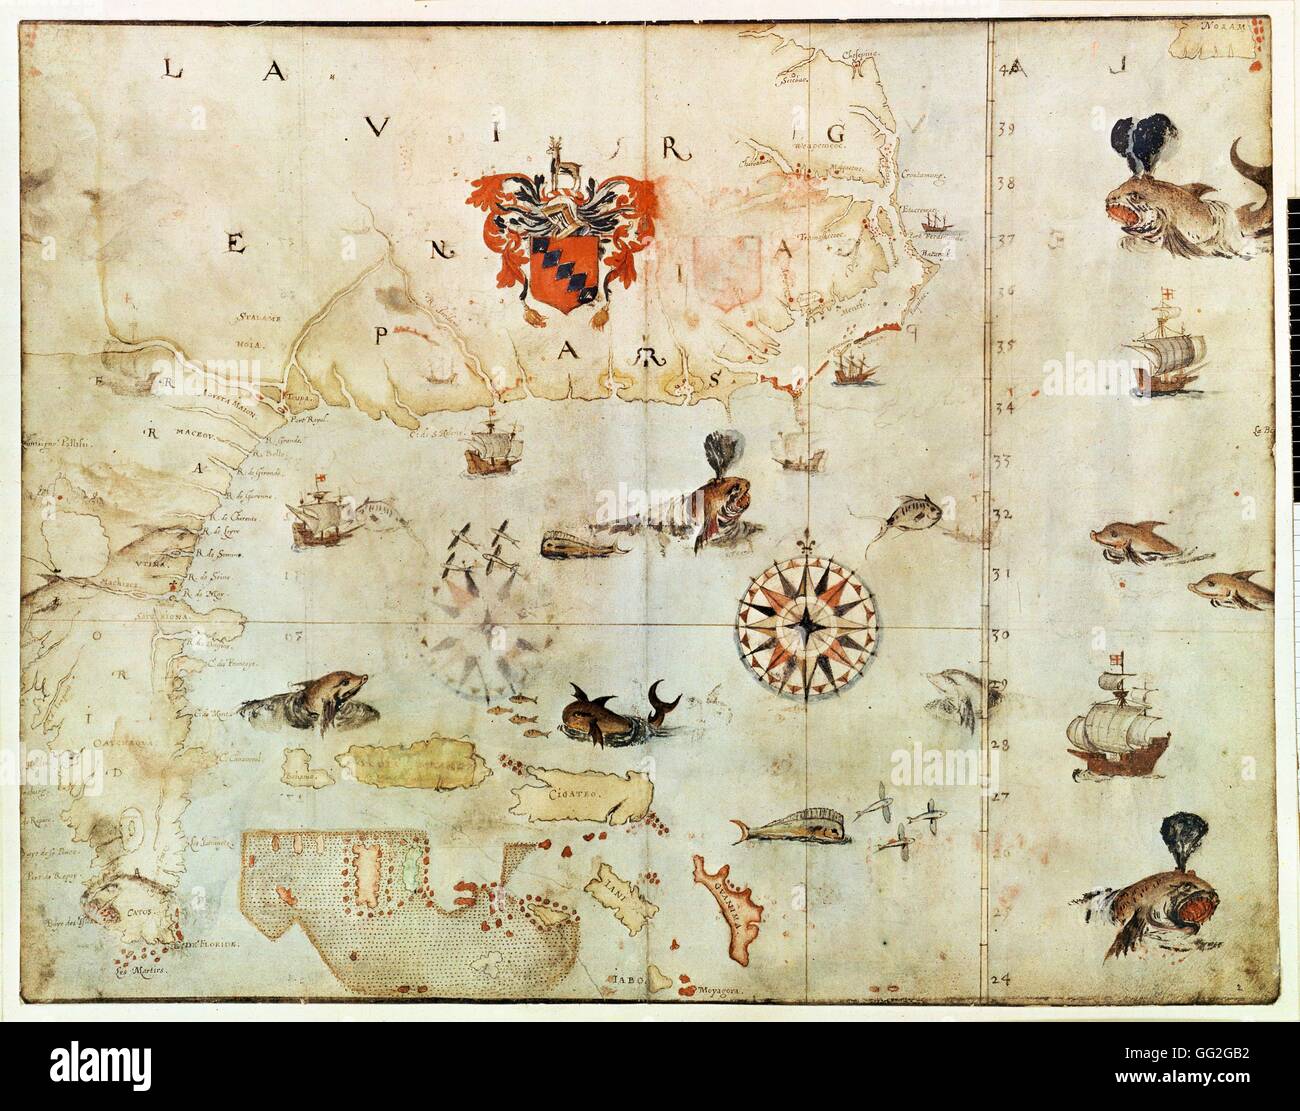 John White English Carte scolaire d'Amérique du Nord : la Virginie et la Floride 1585-1593 crayon, encre et aquarelle sur papier (27 x 47,2 cm) Londres, British Museum Banque D'Images